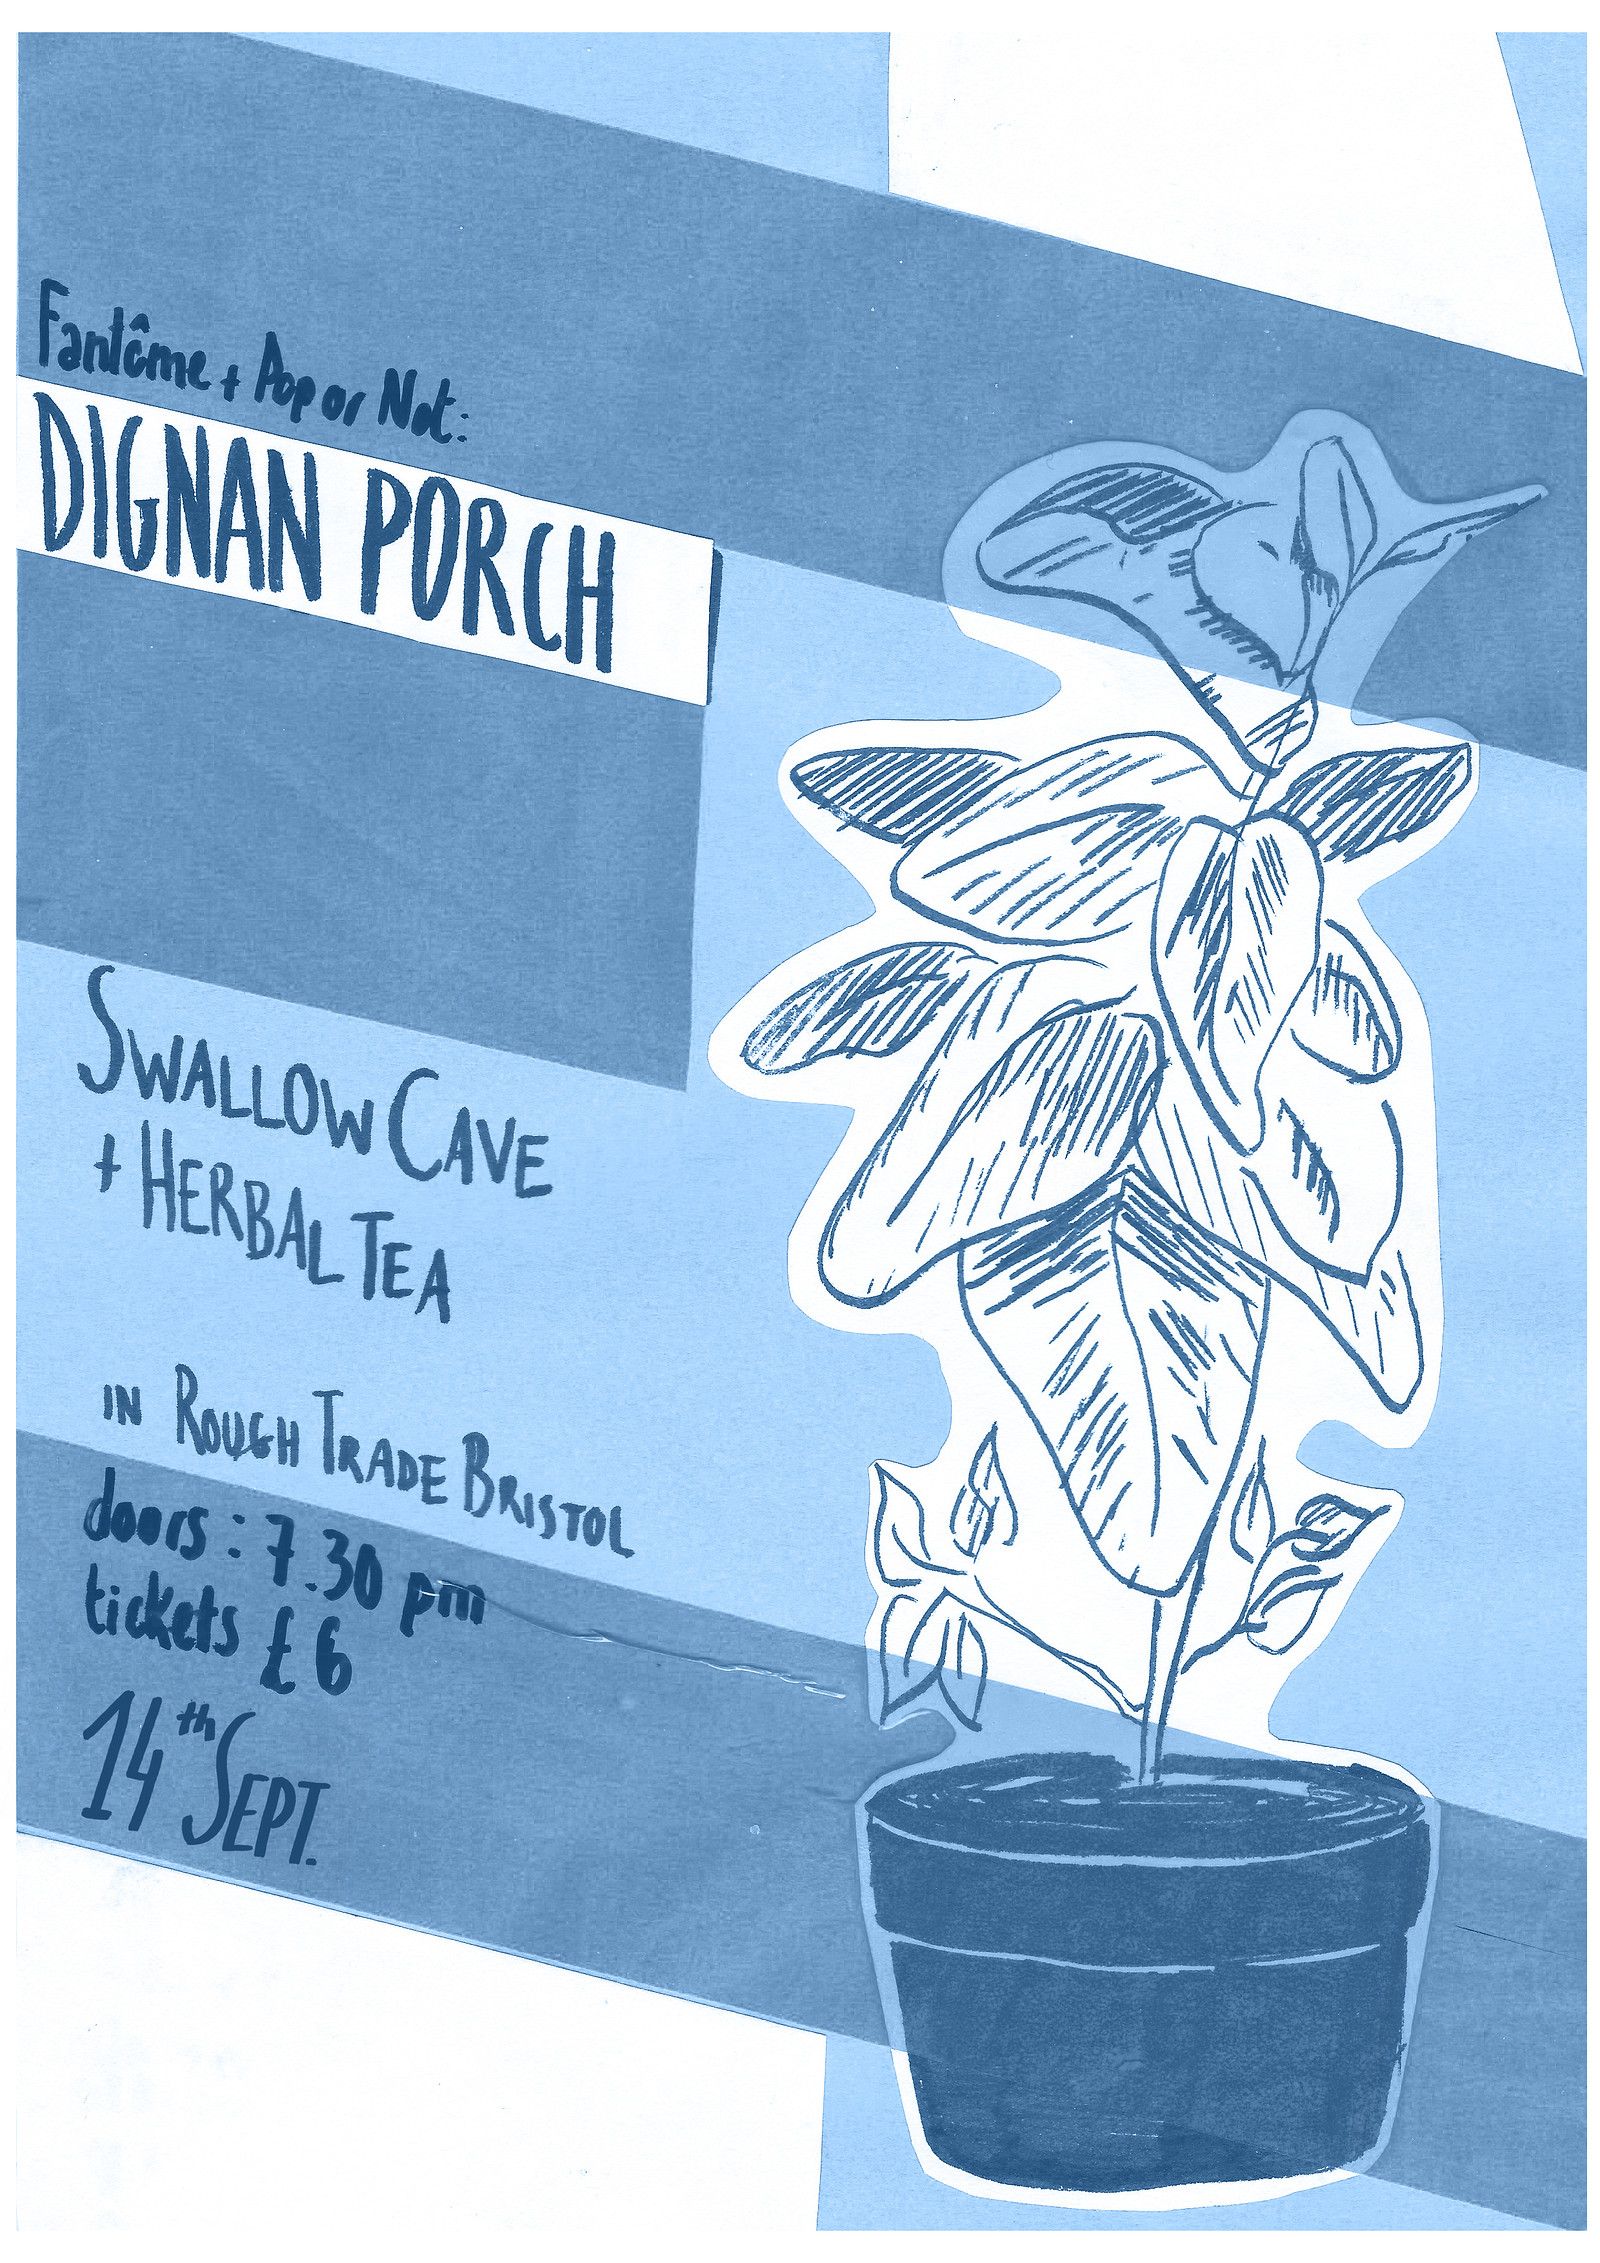 Dignan Porch + Swallow Cave | at Rough Trade at Rough Trade